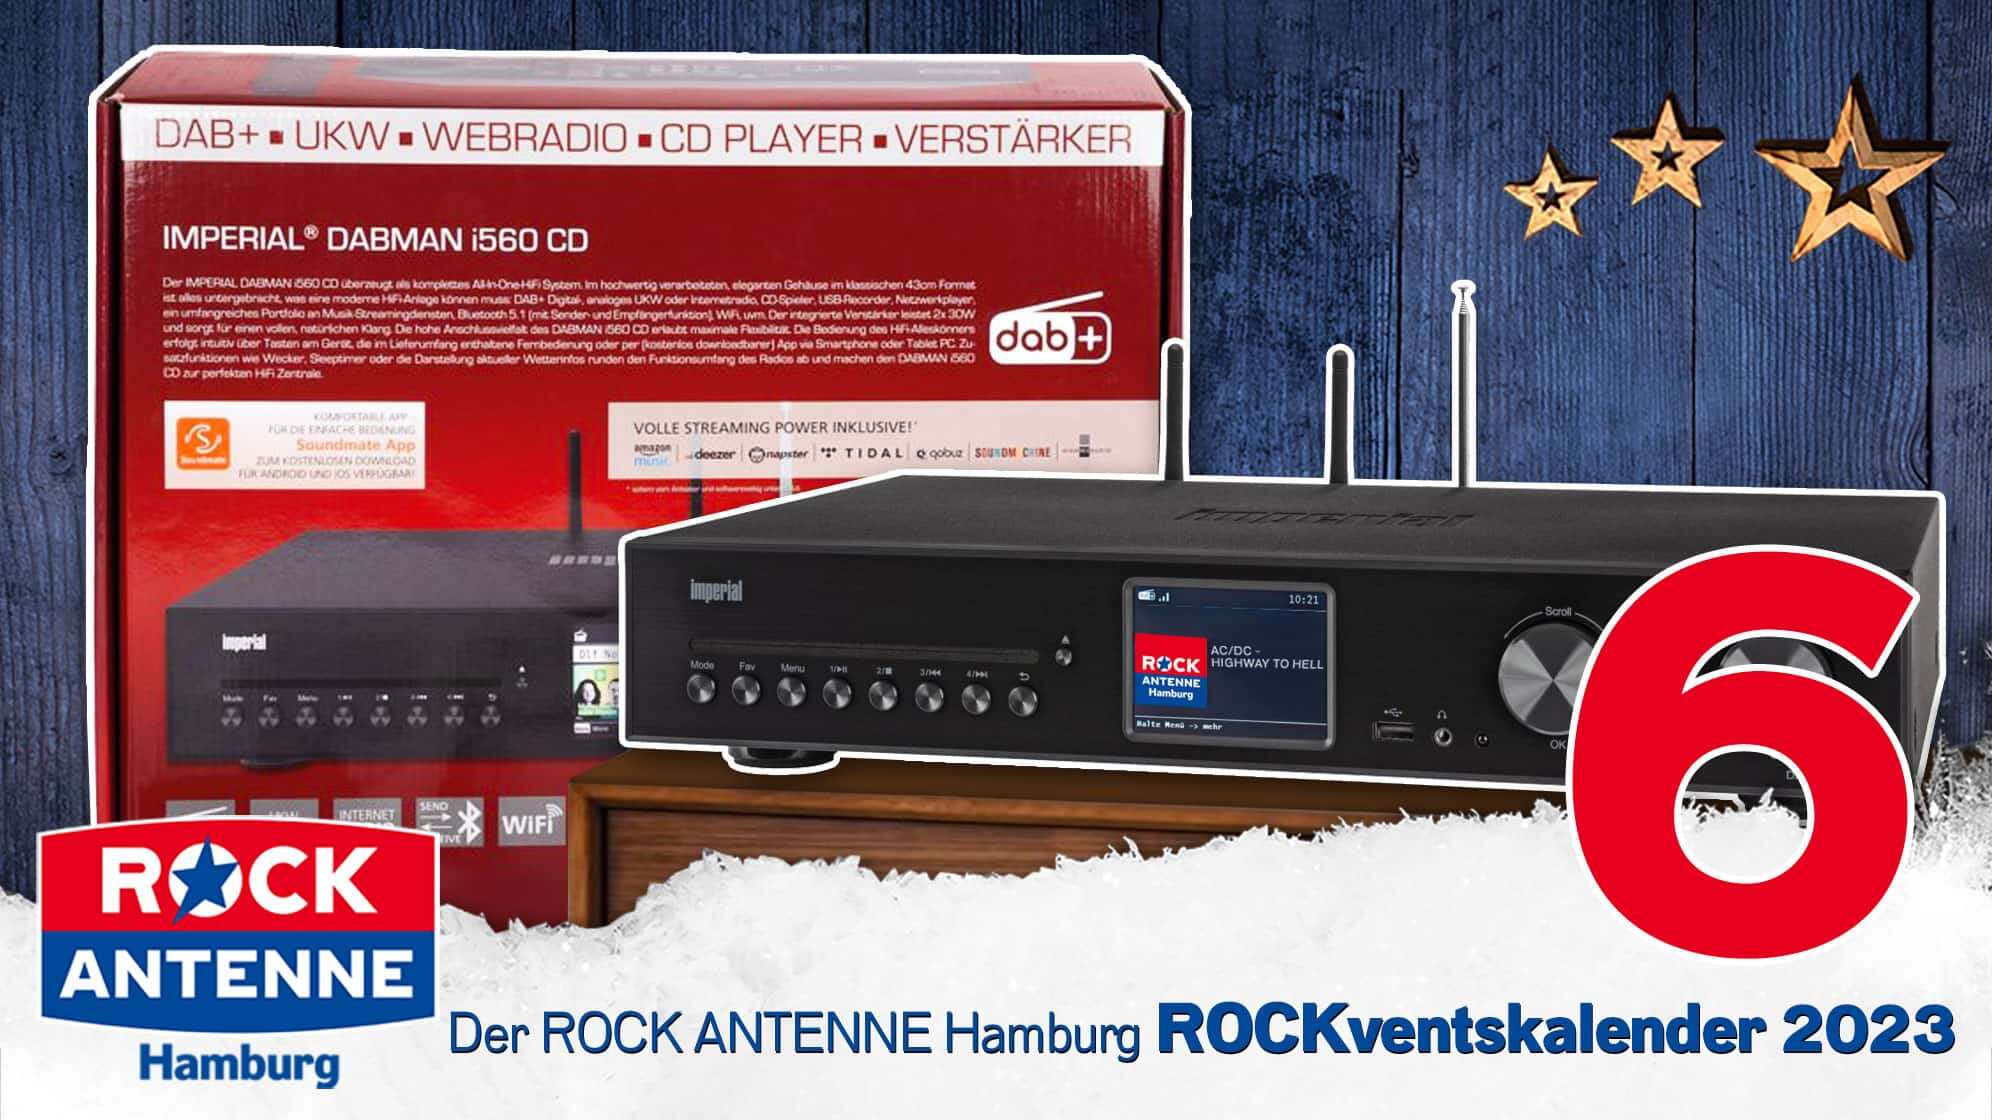 ROCK ANTENNE Hamburg ROCKventskalender Türchen 6: Eine HiFi Anlage von Telestar